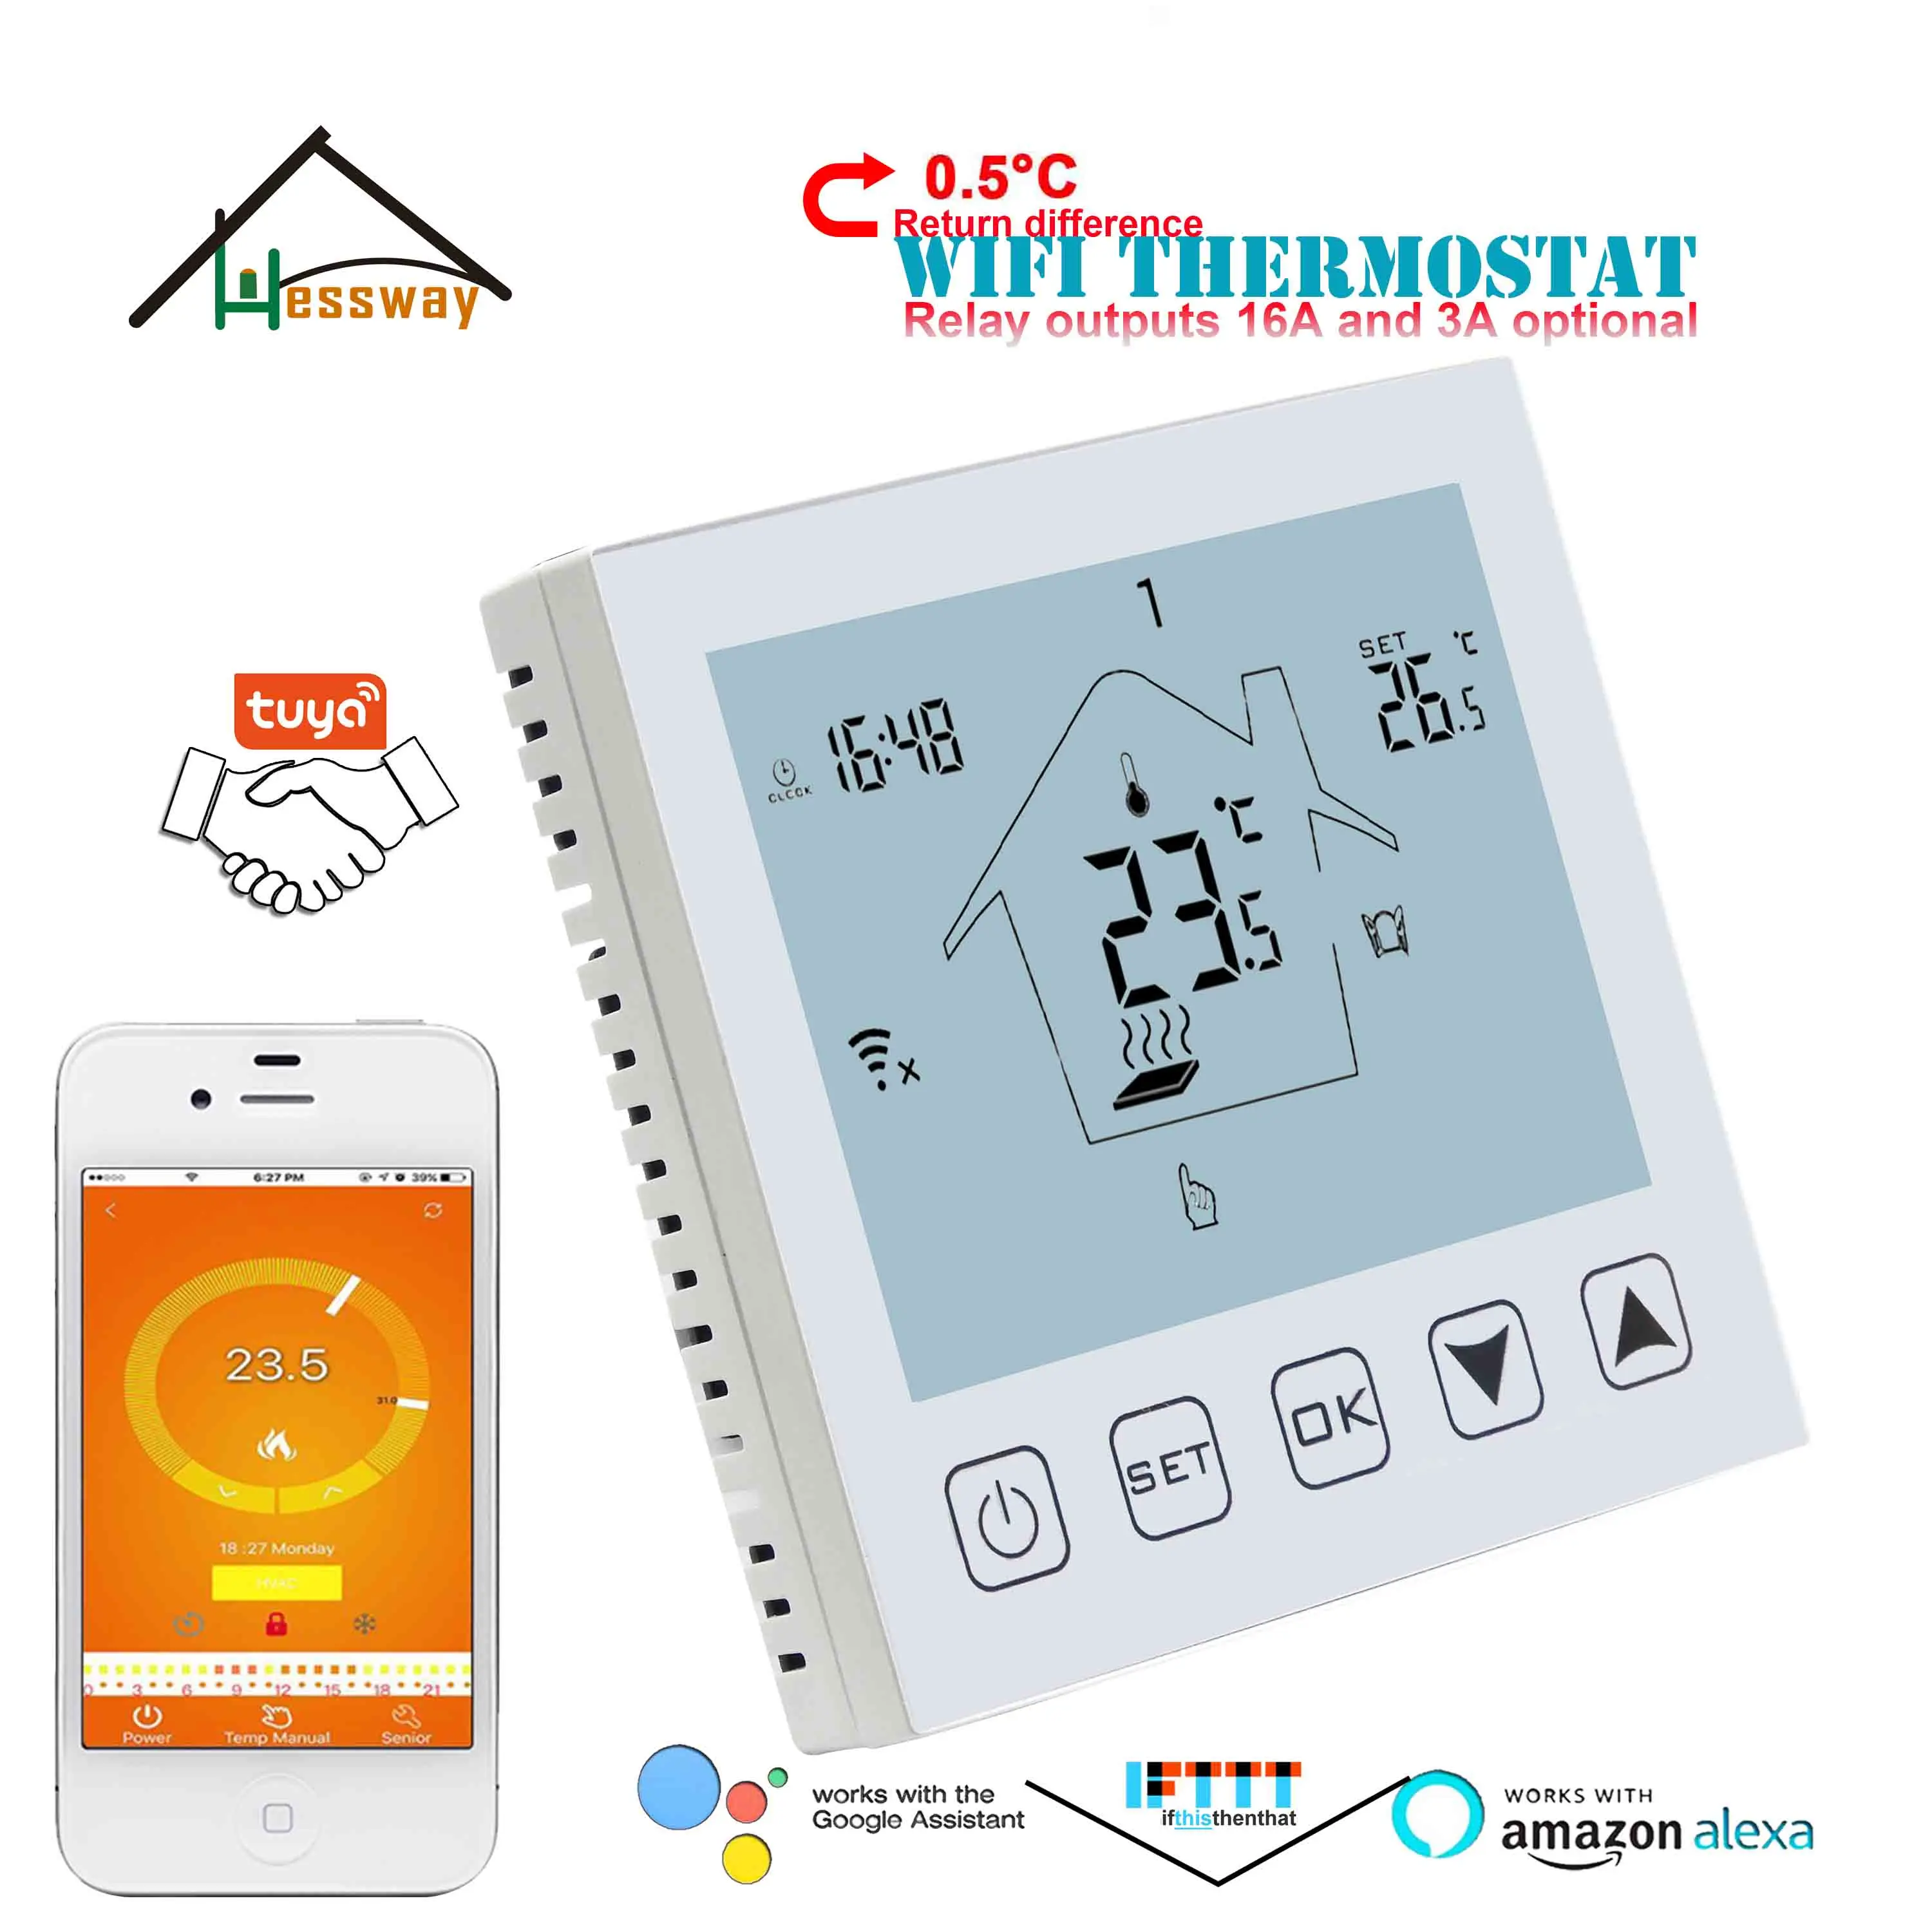 HESSWAY экономичный 0,5 °C Регулируемый напольный термостат с подогревом wifi для TUYA IVR